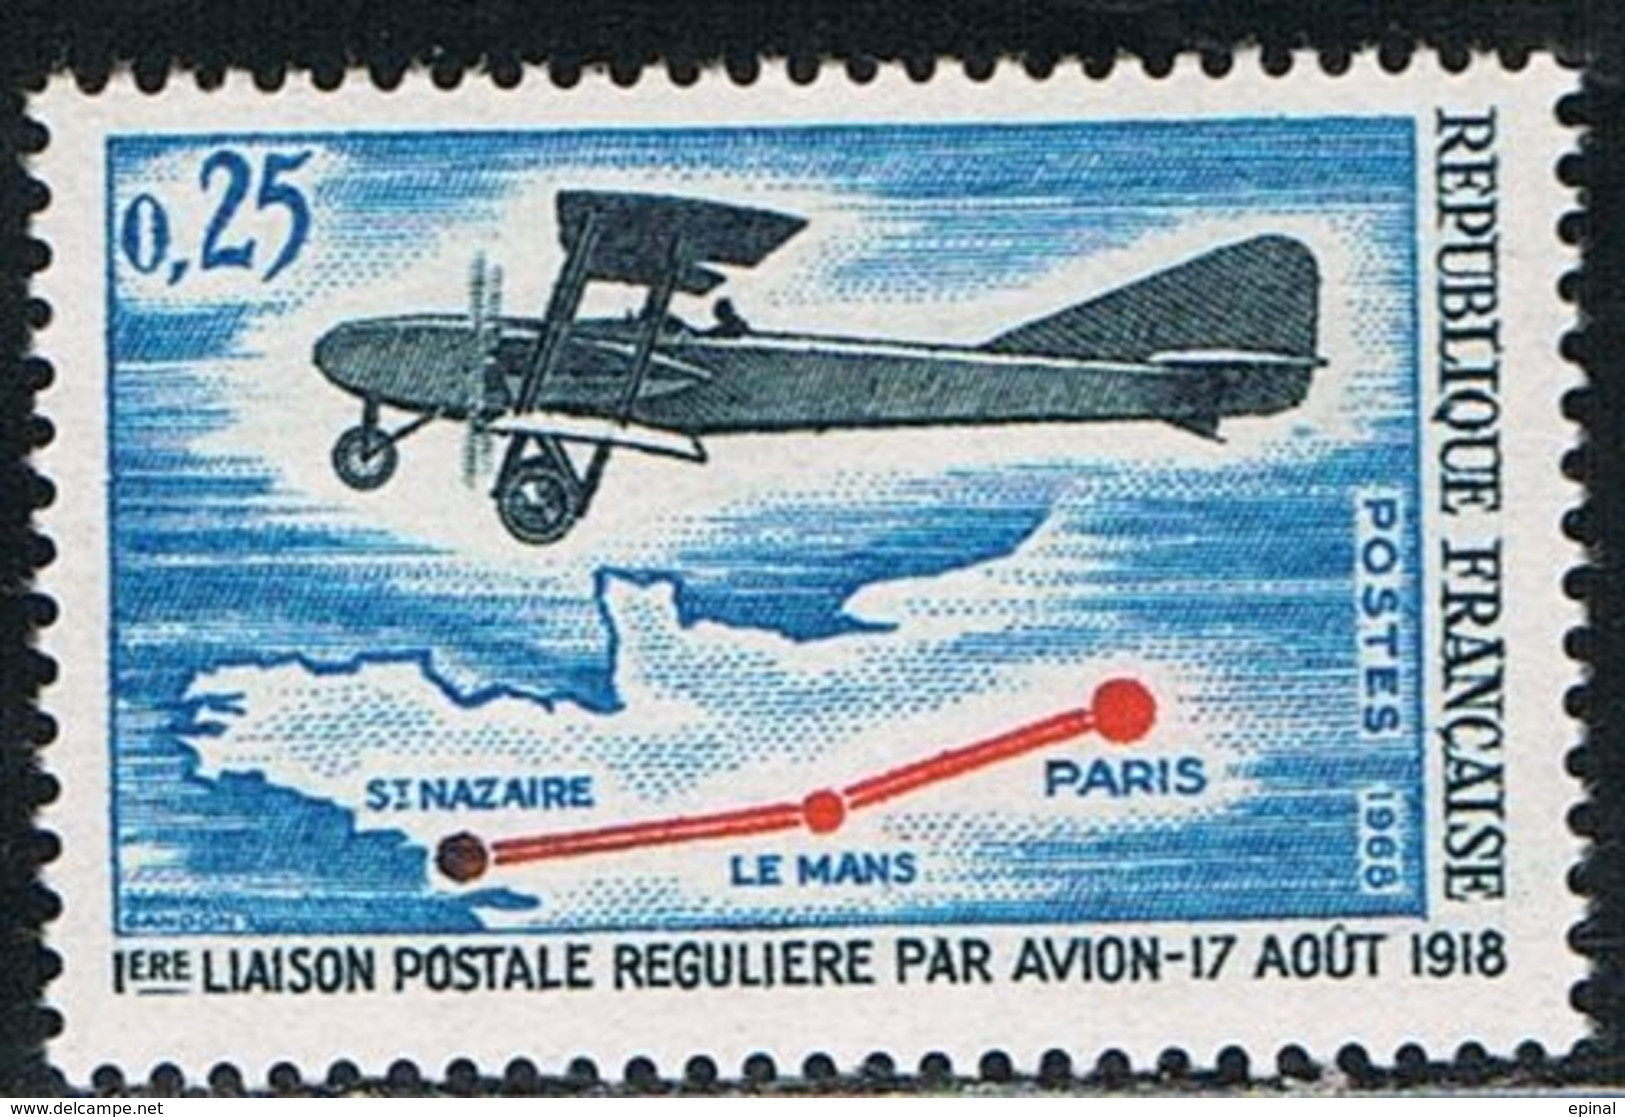 FRANCE : N° 1565 ** (1ère Liaison Postale Régulière Par Avion) - PRIX FIXE - - Neufs